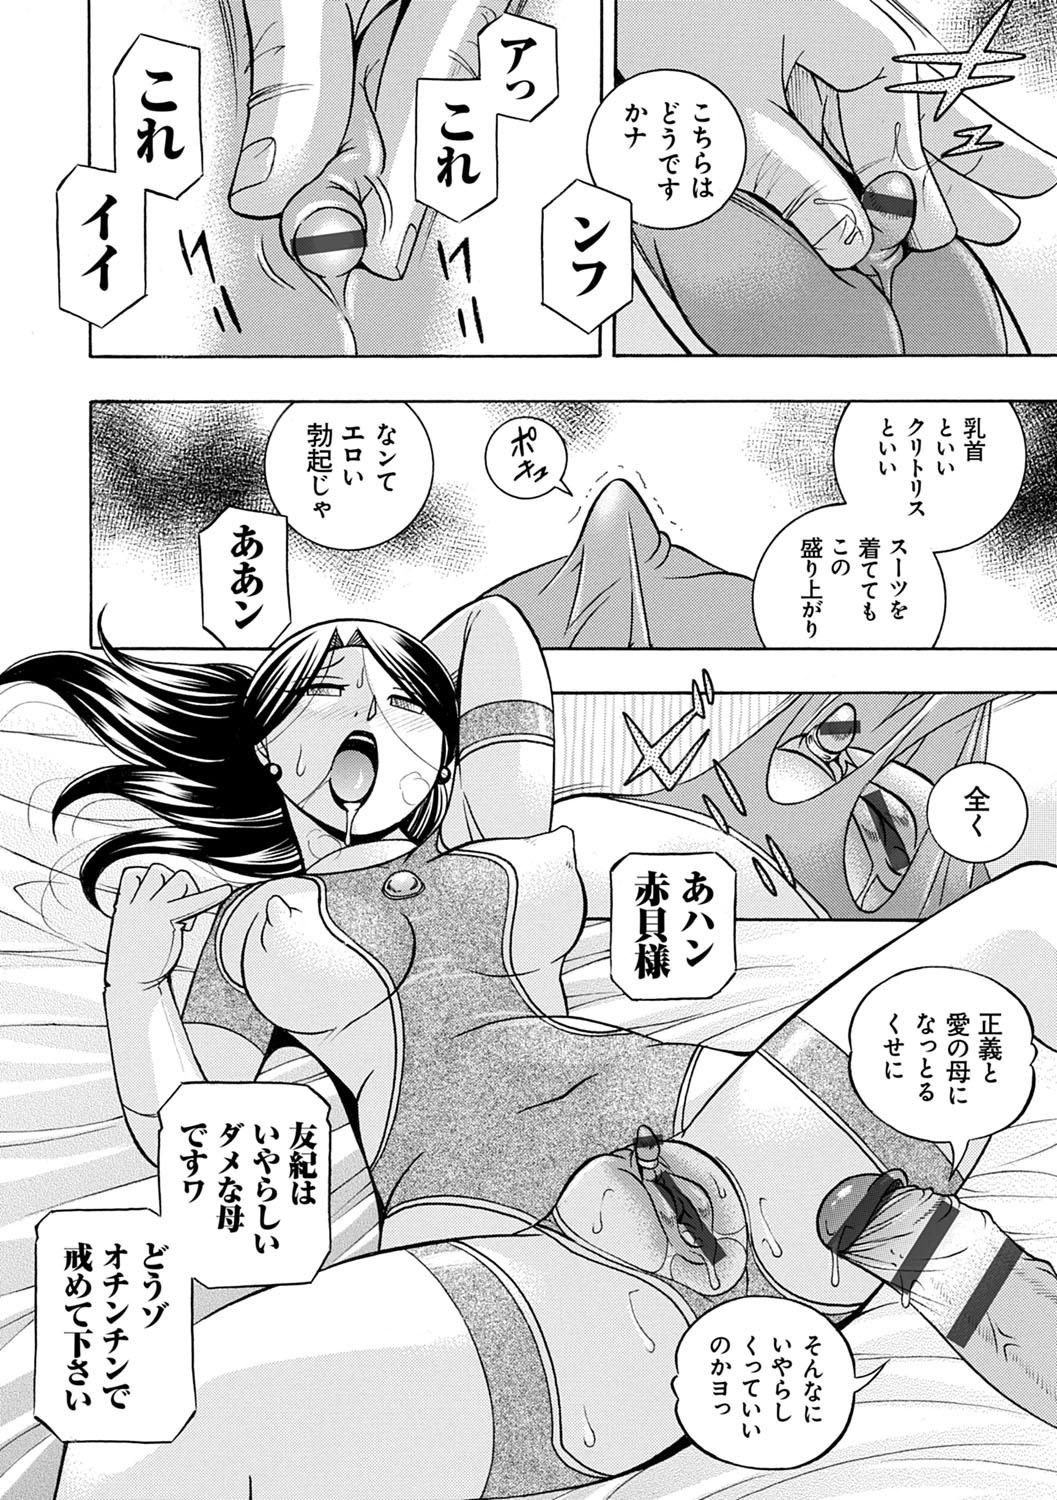 [Chuuka Naruto] Bijin Shachou Yuki ~Mitsuyaku no Nikusettai~ - YUKI of The Beautiful Chief Executive Officer ~The secret sweet treaty by sexual reception~ [Digital] 191